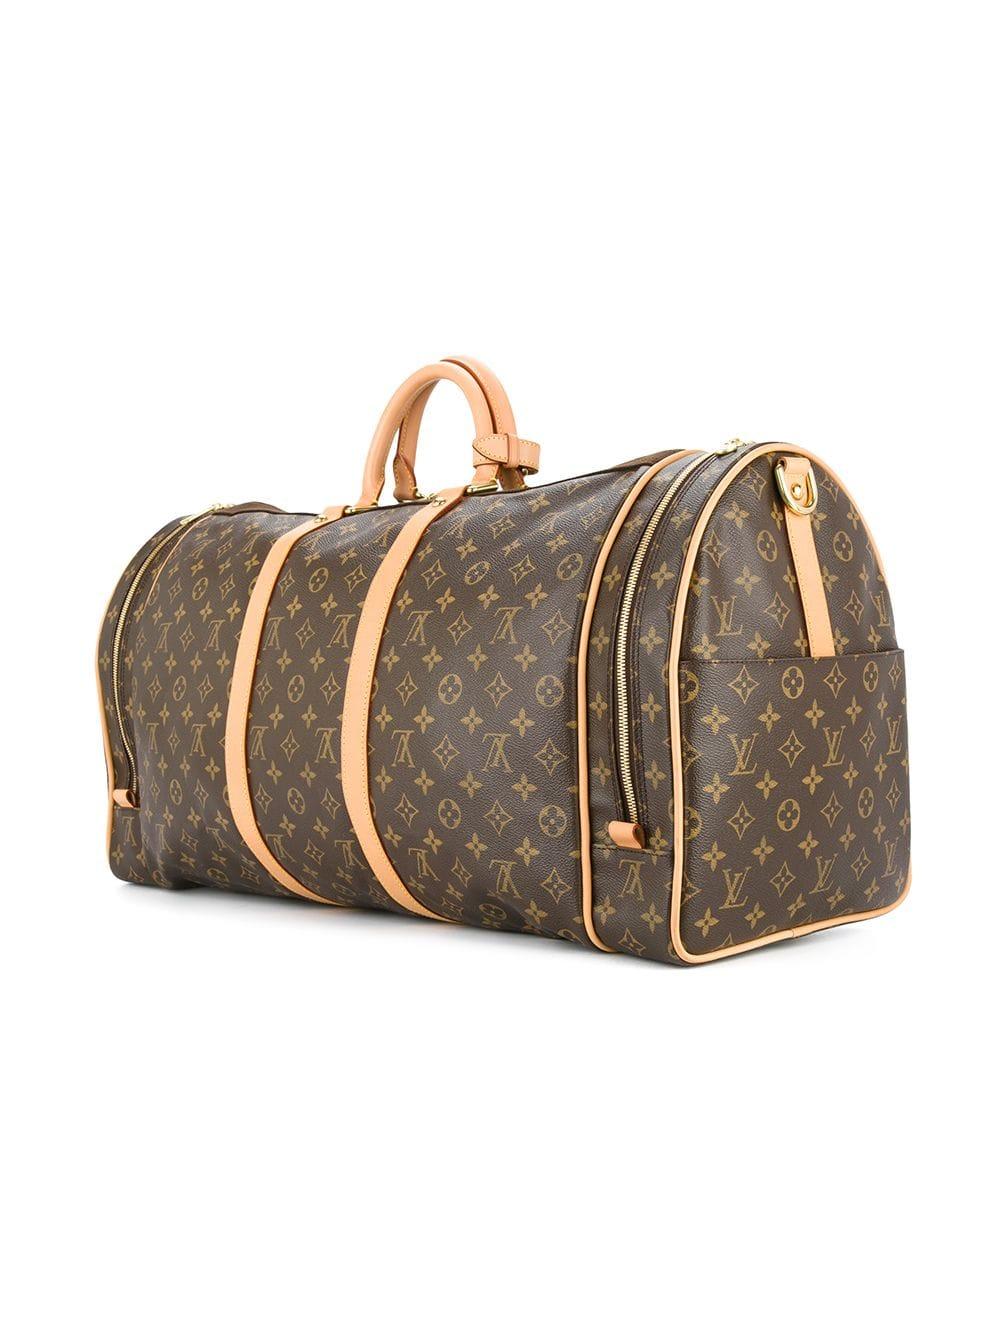 Women's or Men's Louis Vuitton Monogram Travel Men's Women's Top Handle Weekender Duffle Bag